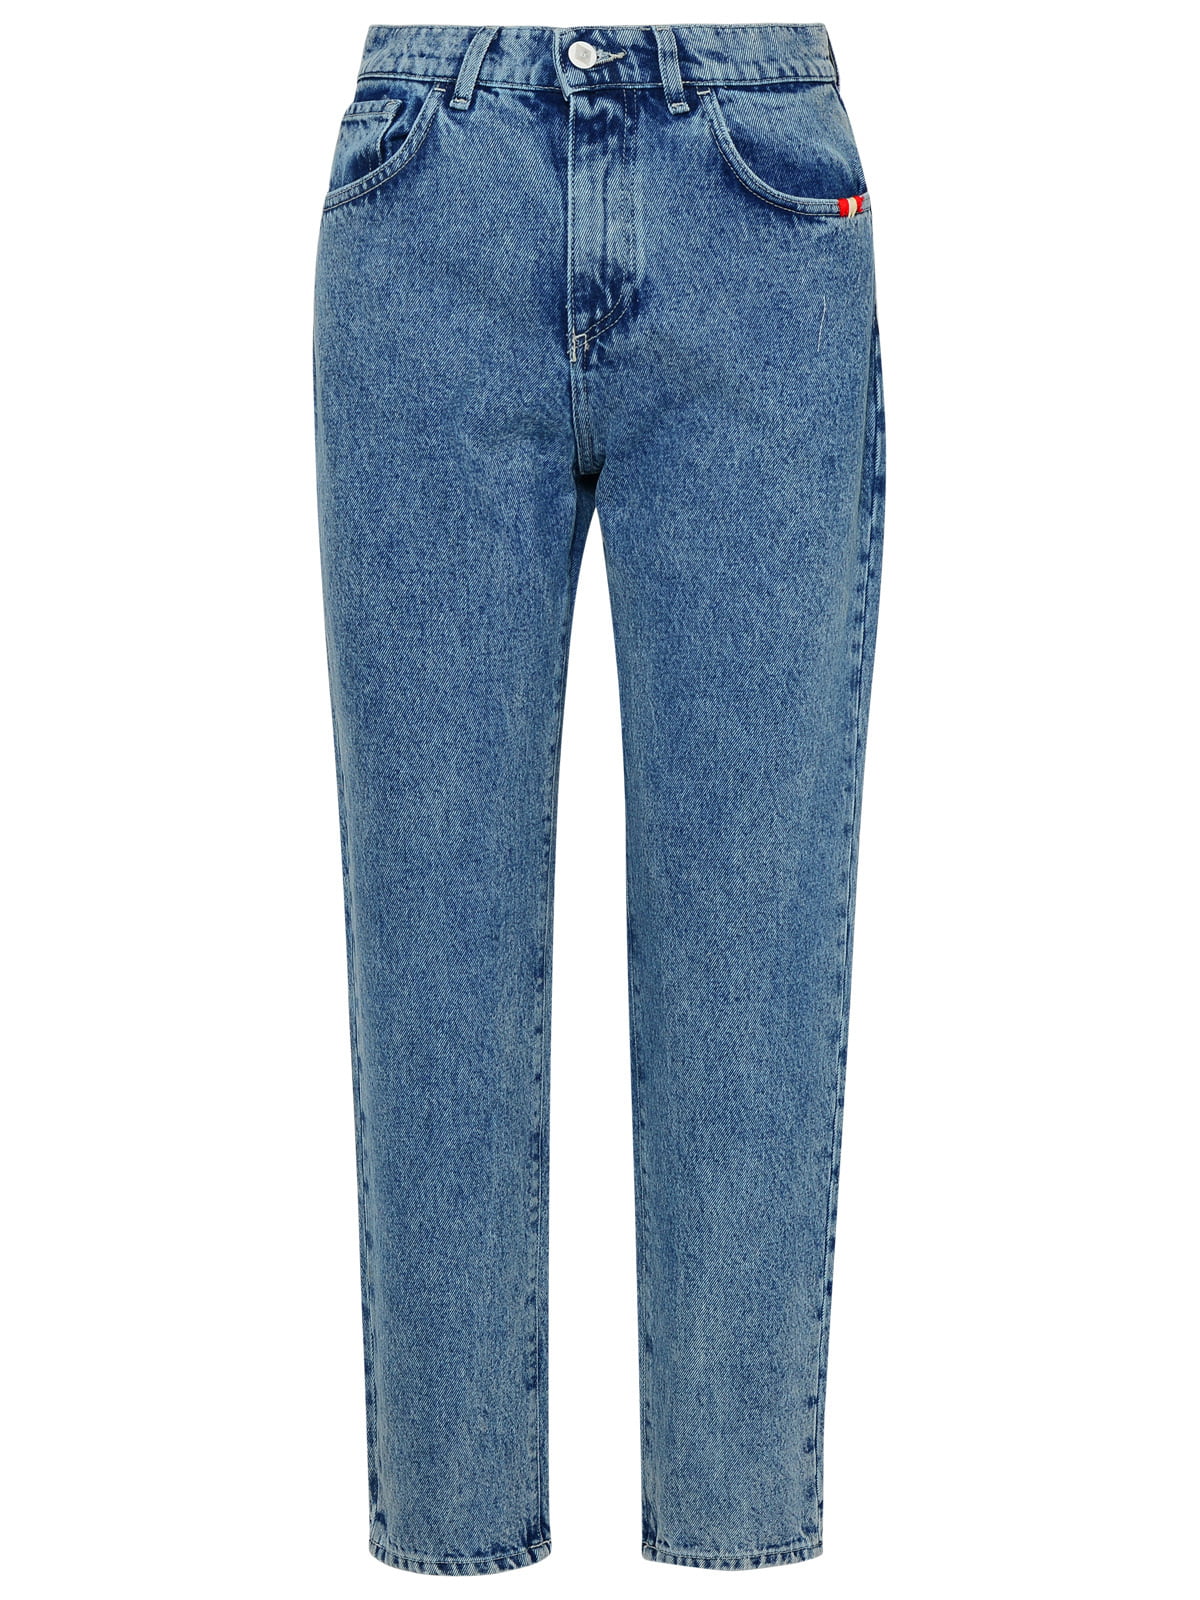 AMISH Jeans Lizzie In Denim Di Cotone Azzurri - Walmart.com